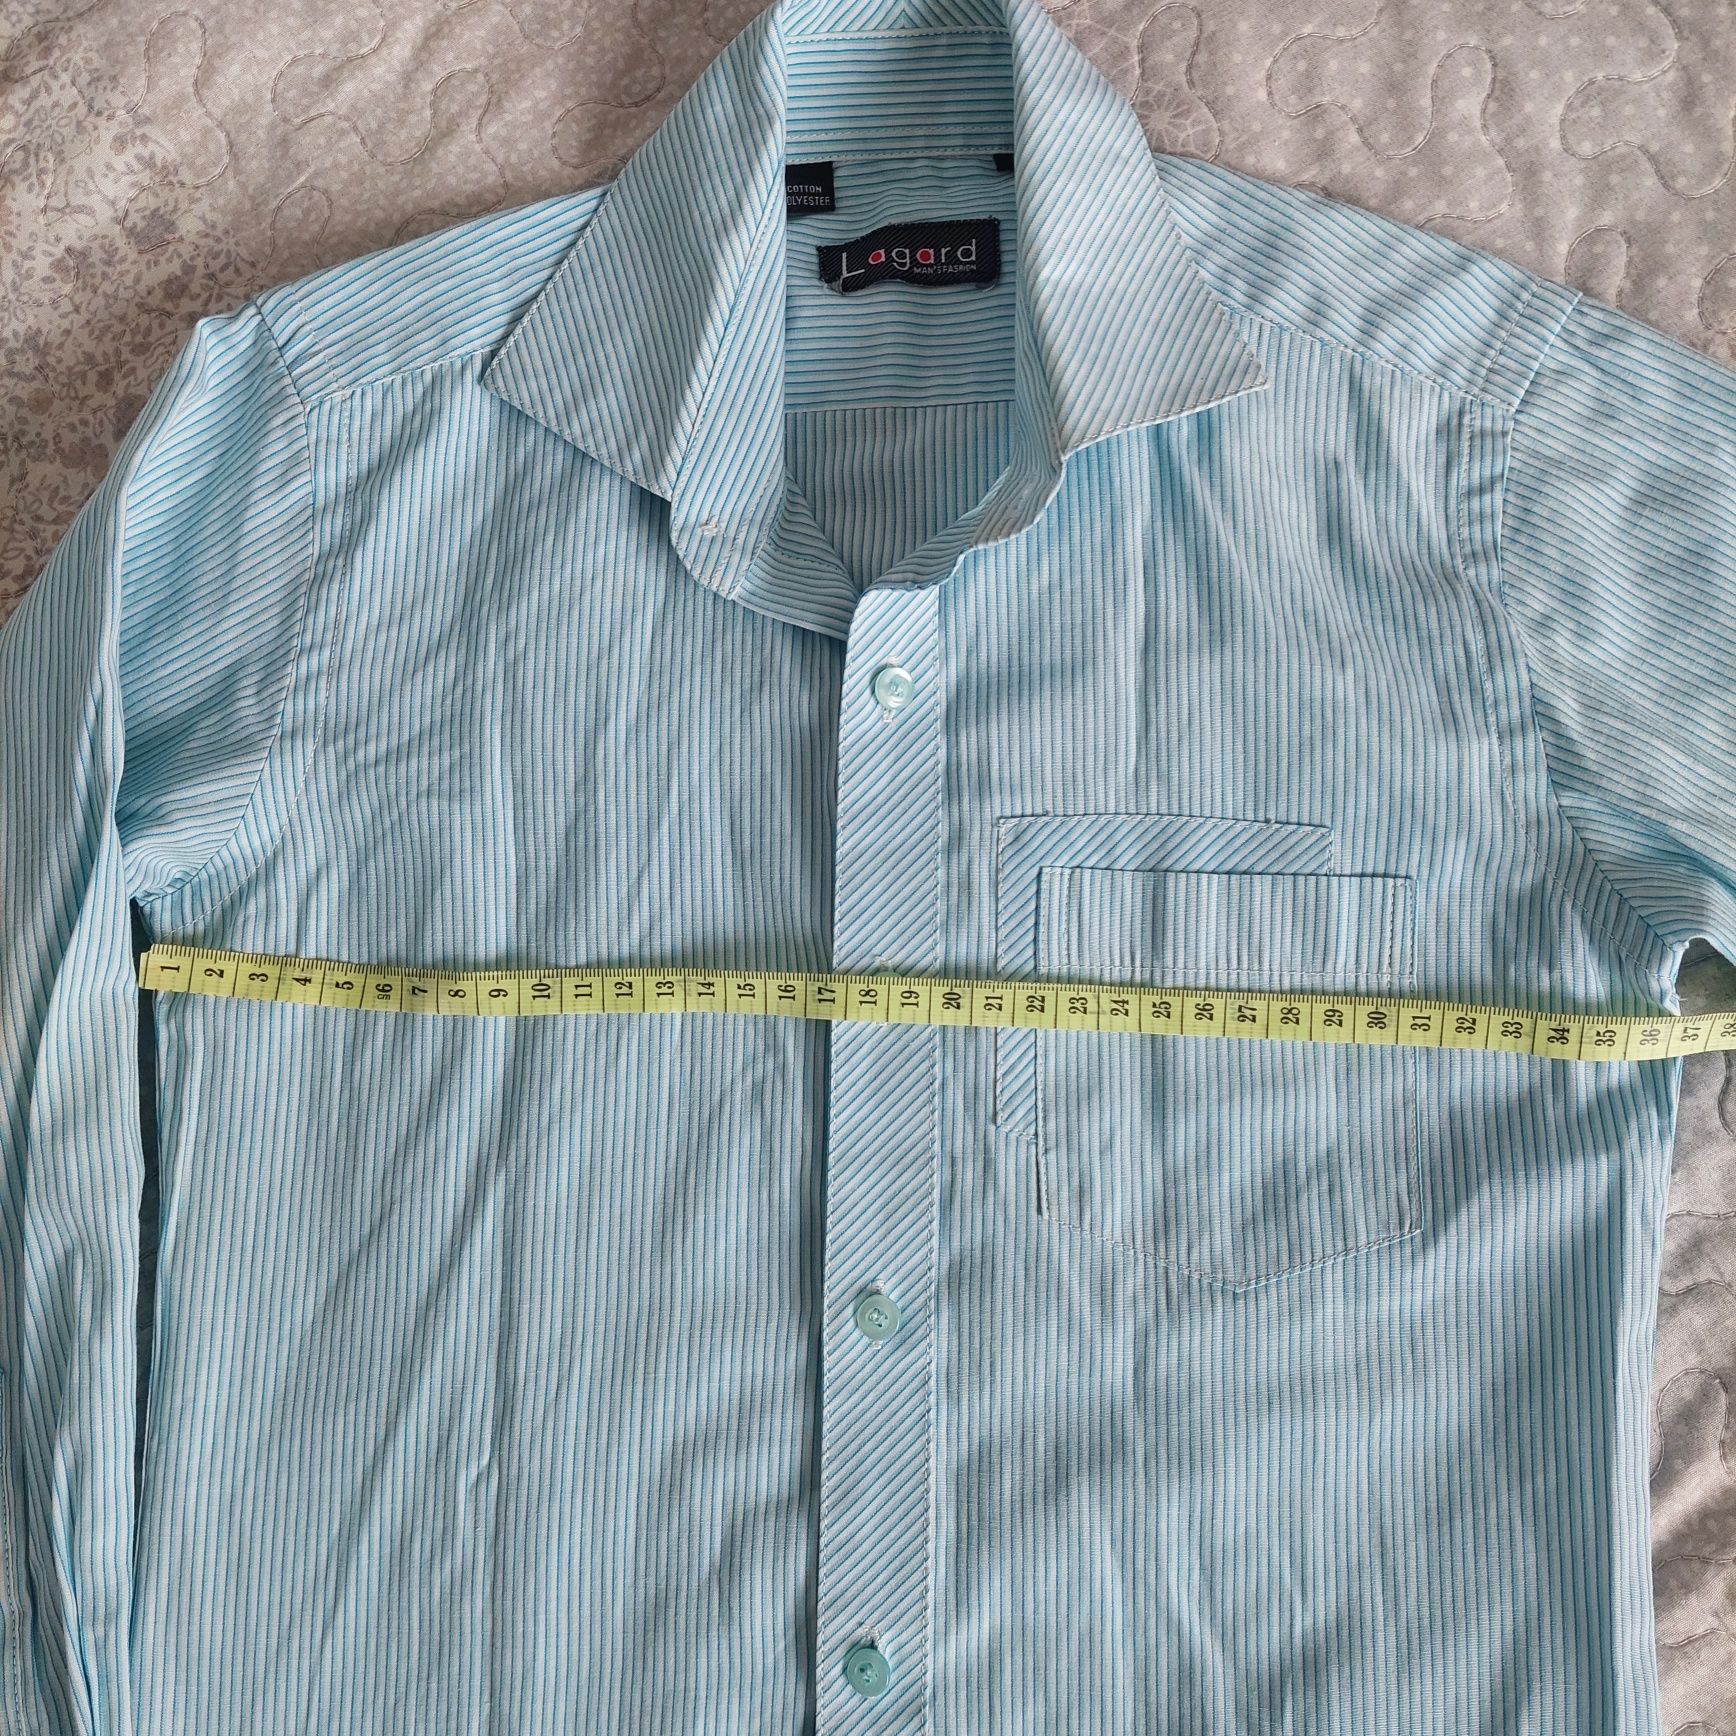 Класична сорочка на хлопця в школу біла у блакитну смужку